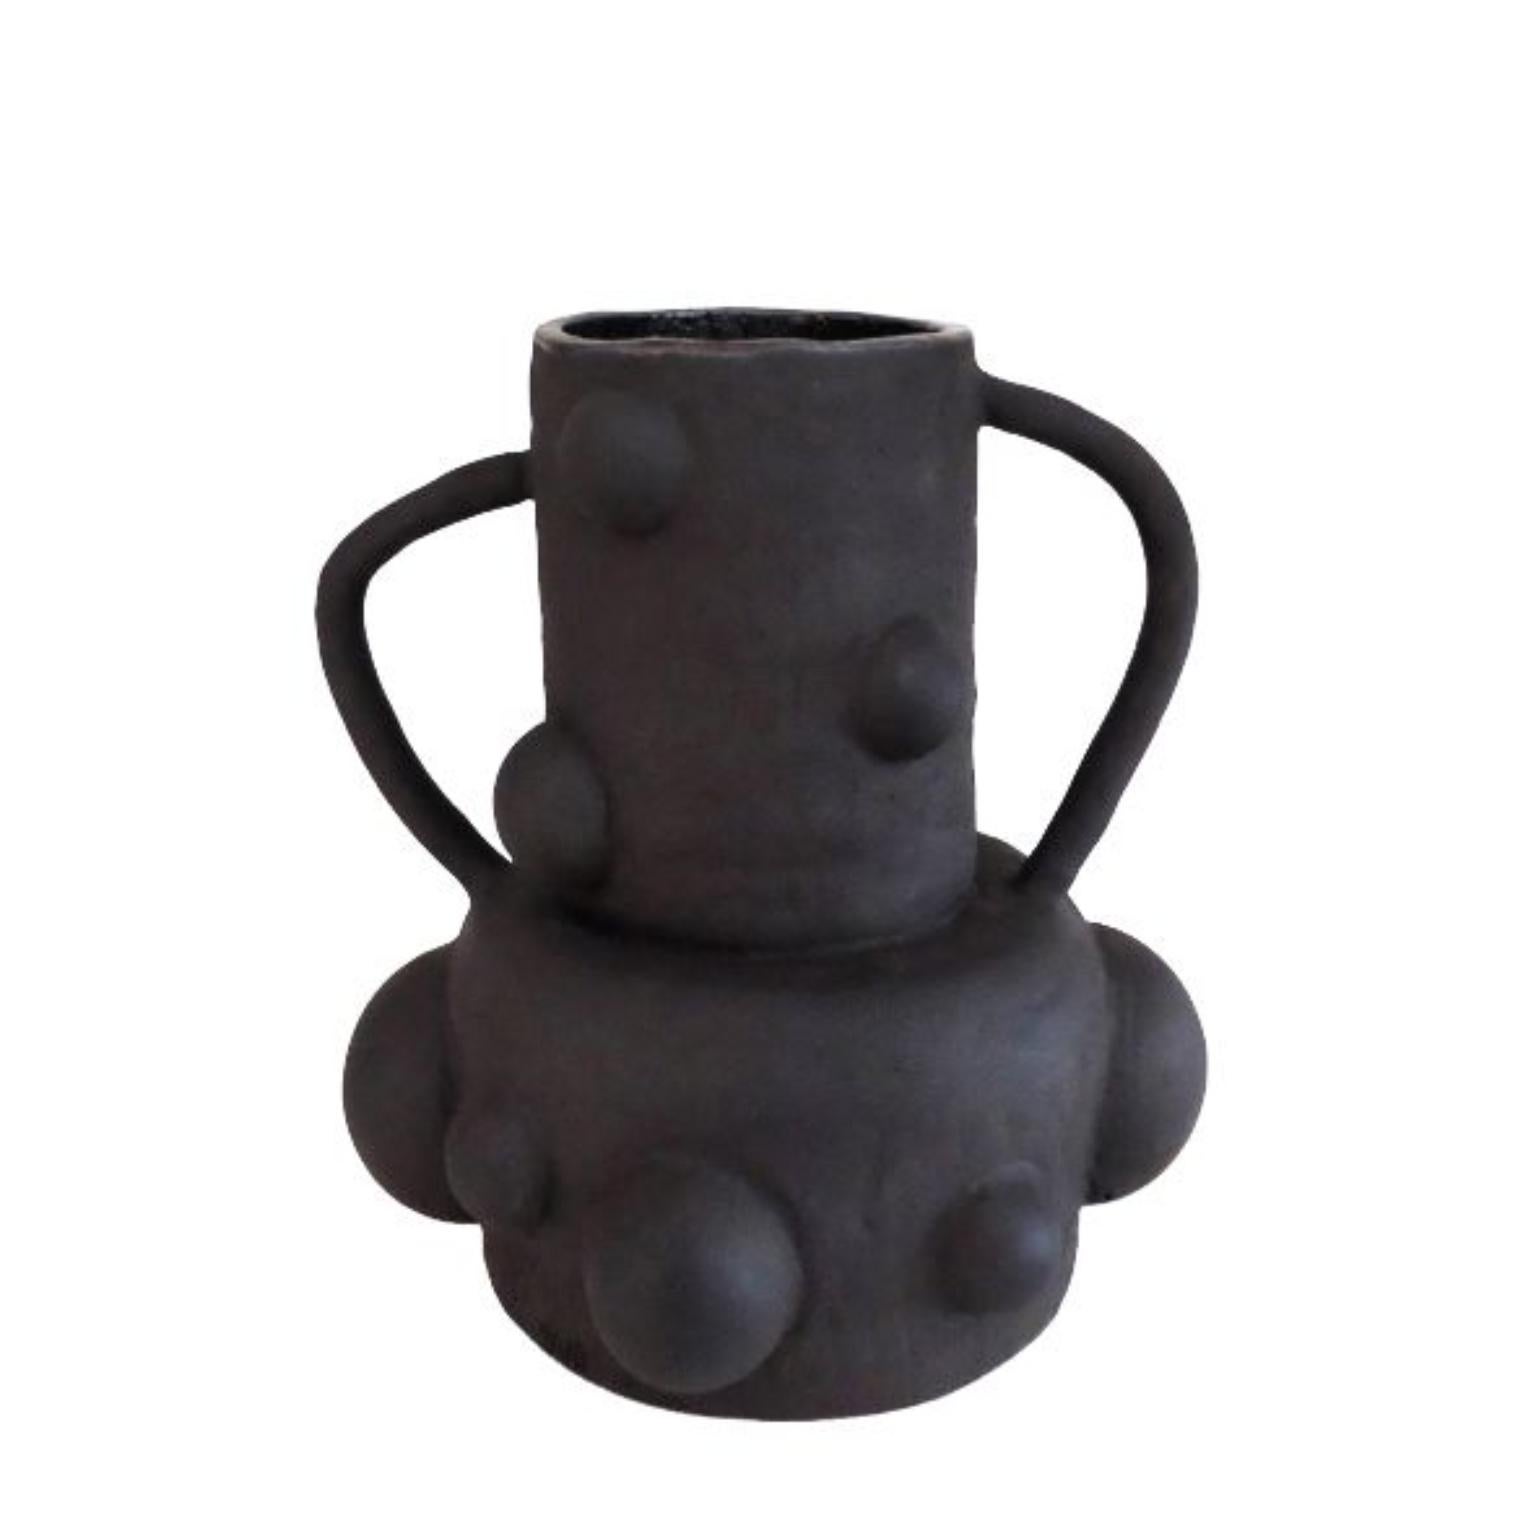 Skulpturale Mondvase von Ia Kutateladze
Abmessungen: B 23 x H 25 cm
MATERIALIEN: Roher schwarzer Ton

Die Moon-Vase ist ein kühnes Keramikstück, das aus schwarzem Ton handgefertigt wurde. Die Innenseite ist mit einer Metallglasur versehen, während